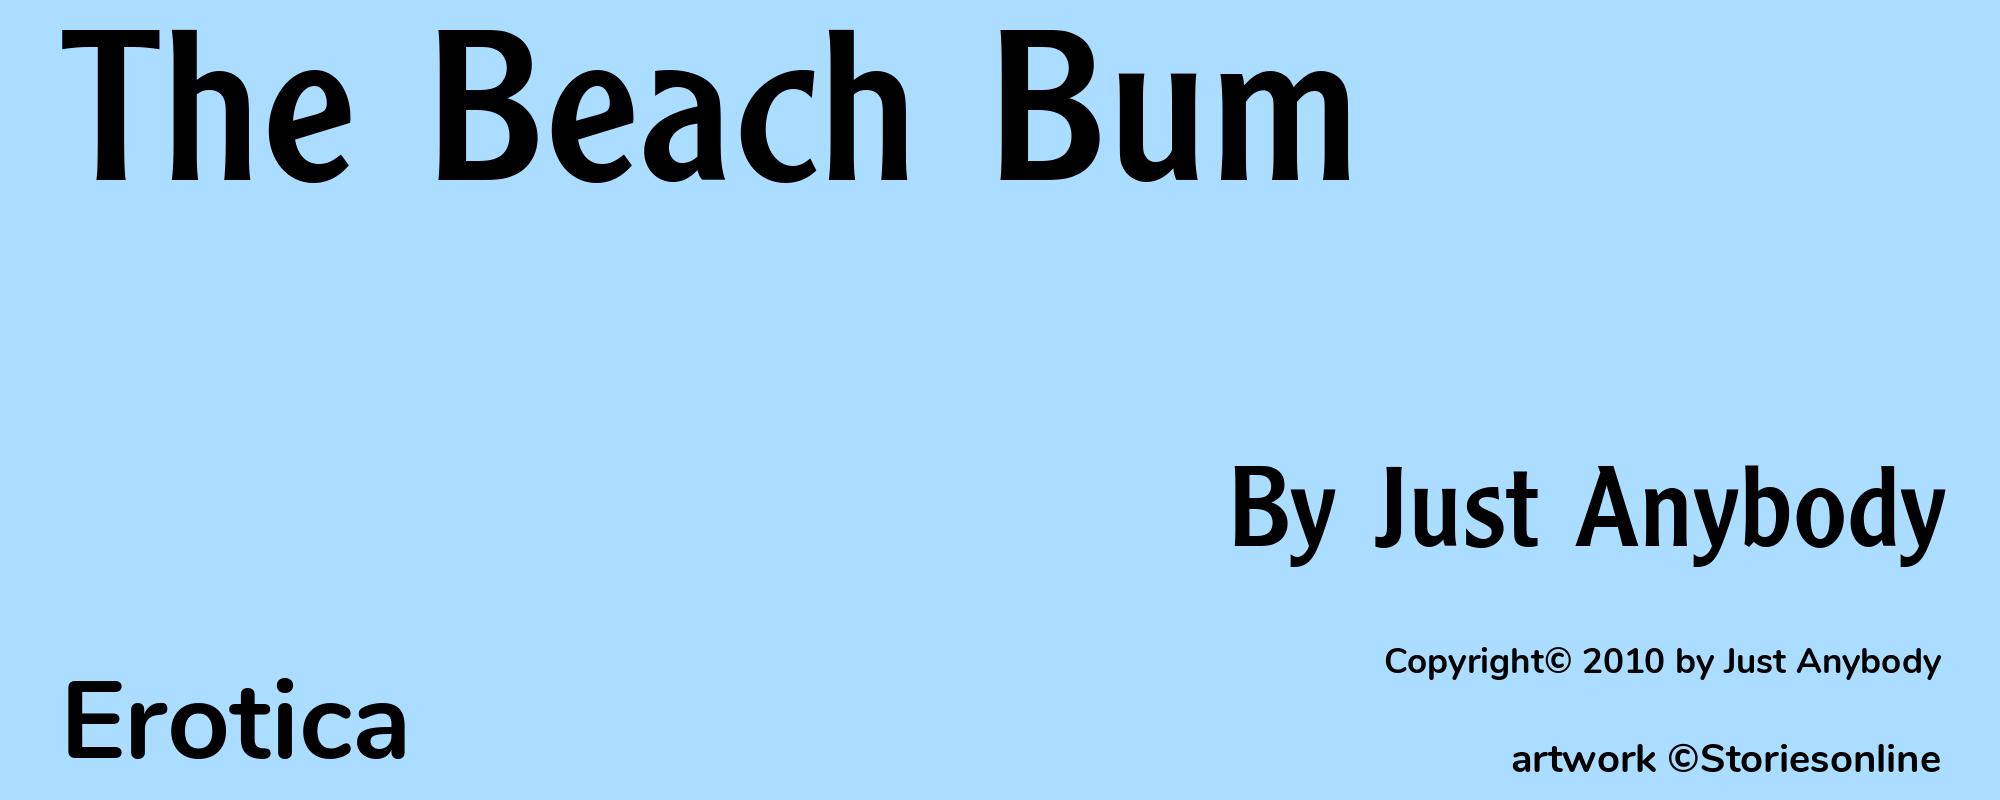 The Beach Bum - Cover